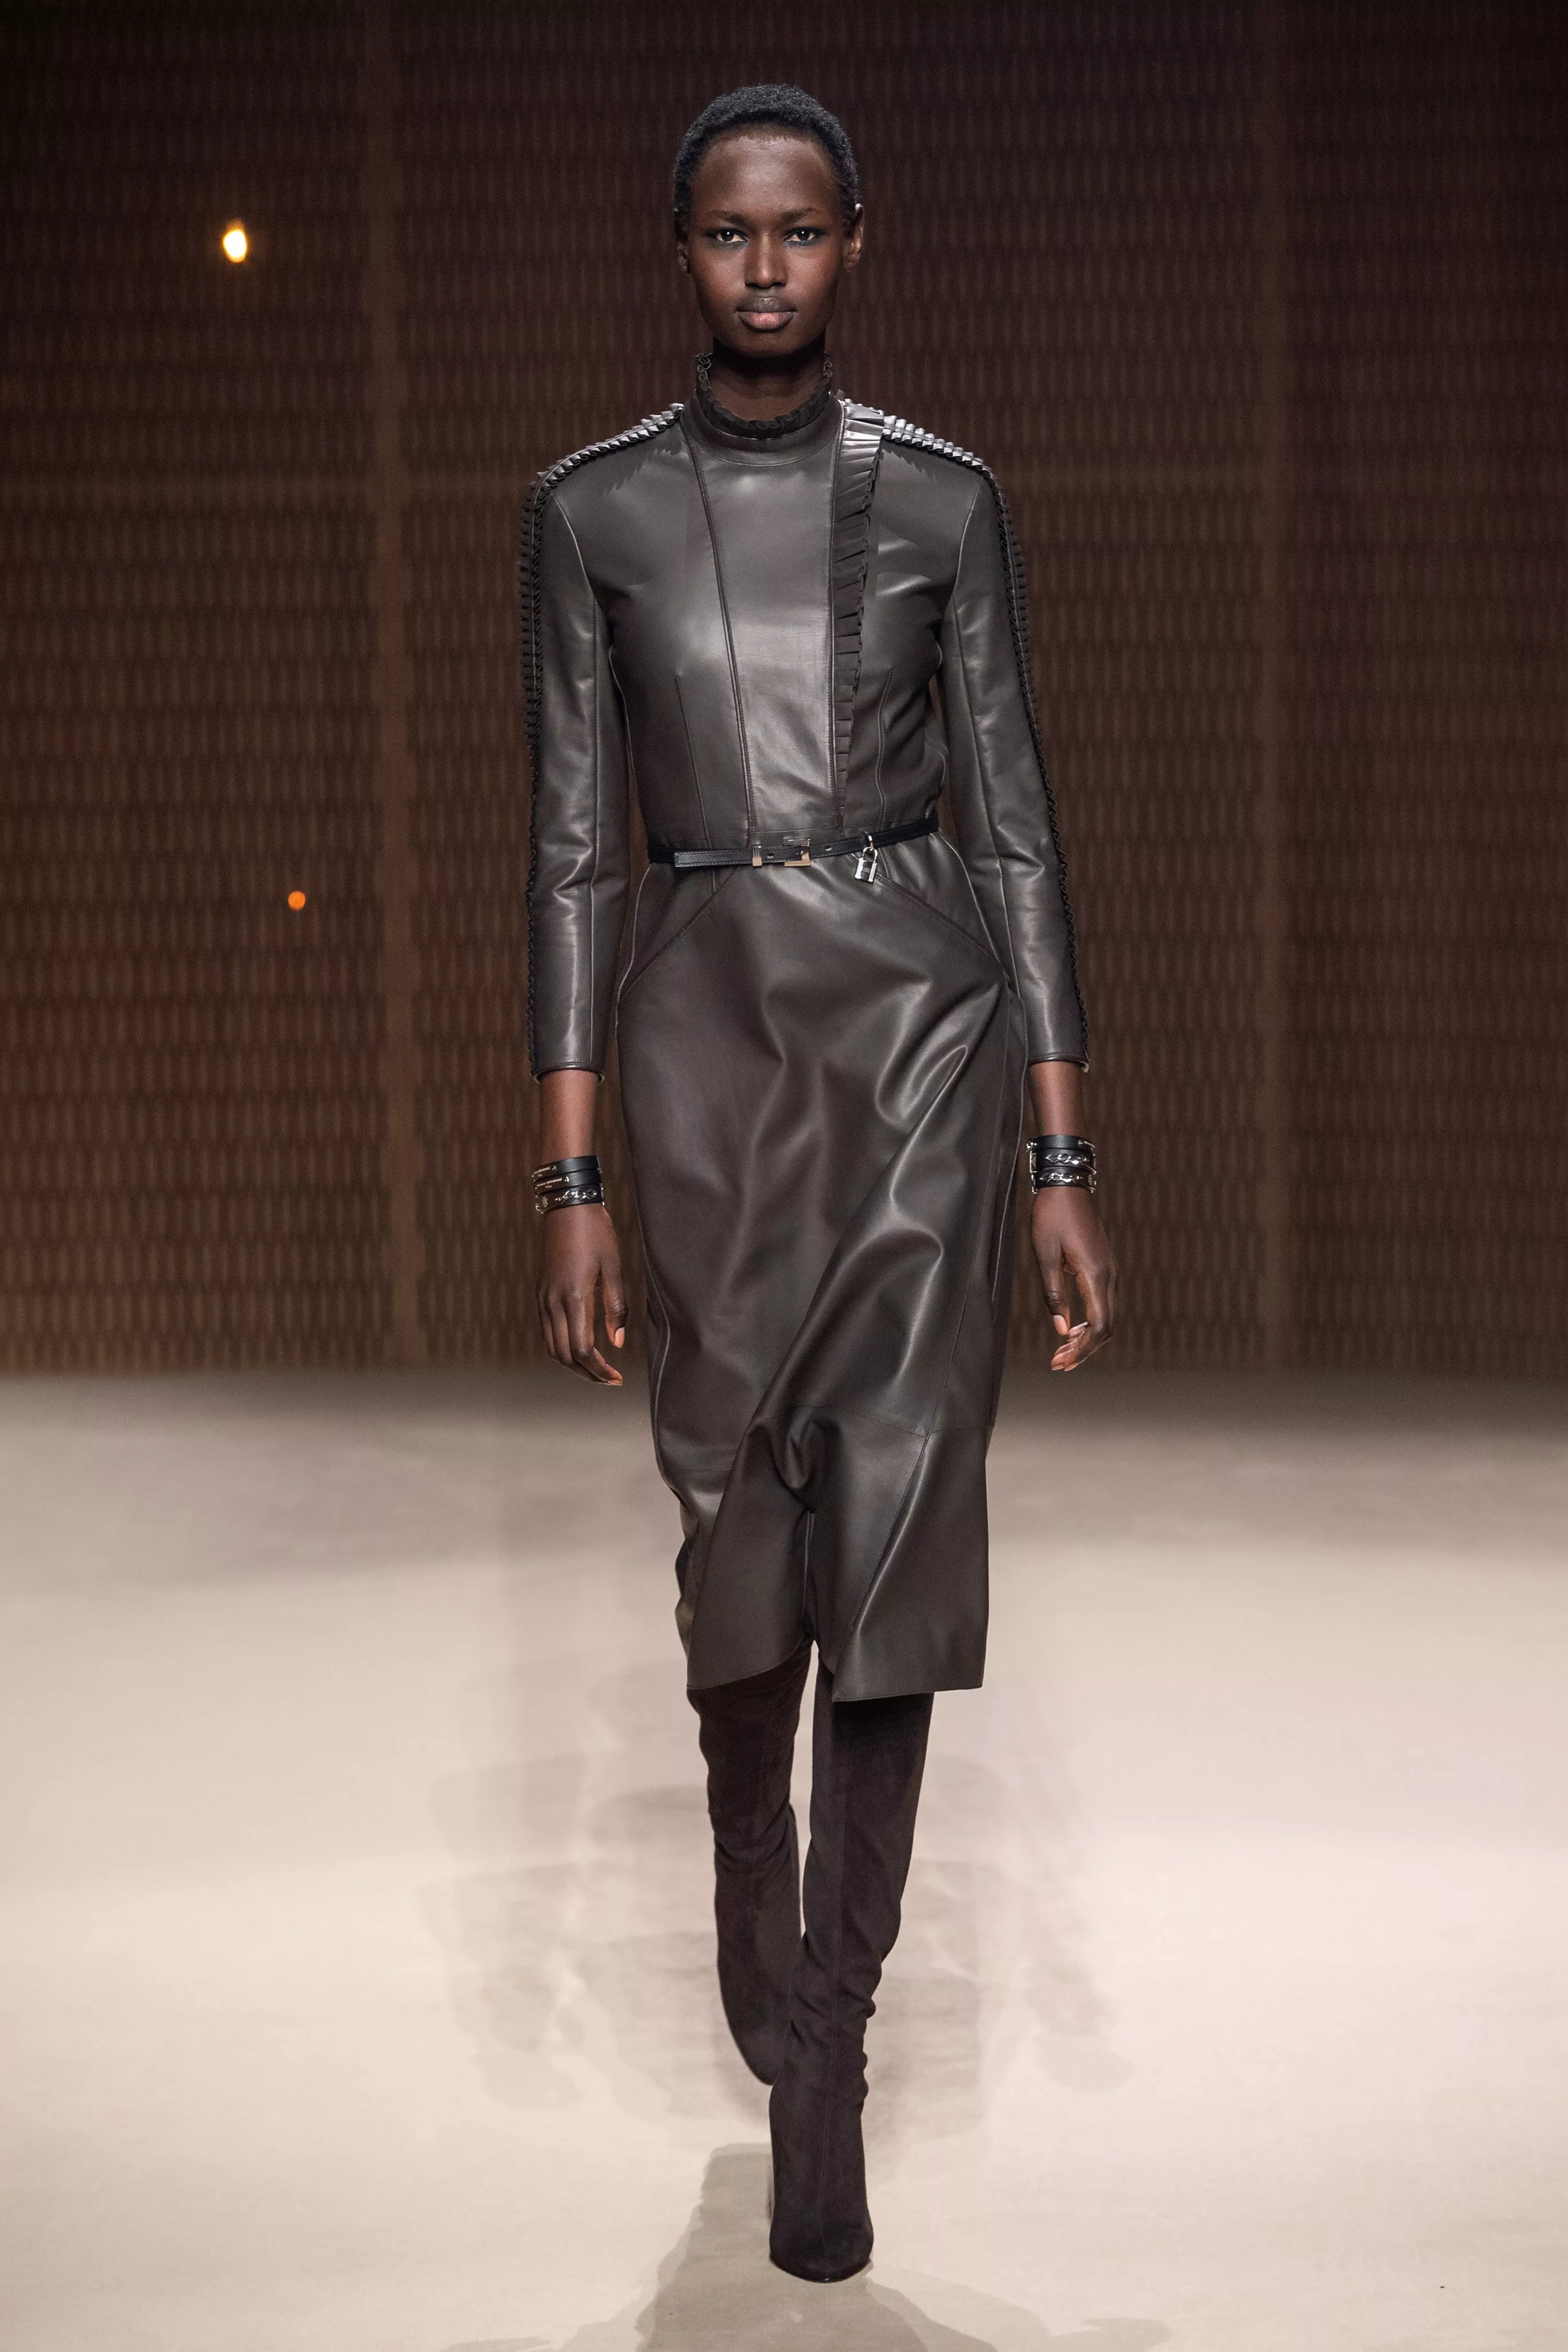 مجموعة Hermès للأزياء الجاهزة لخريف 2019: مزيج بين دقّة تصميم الجلد والأناقة المترفة